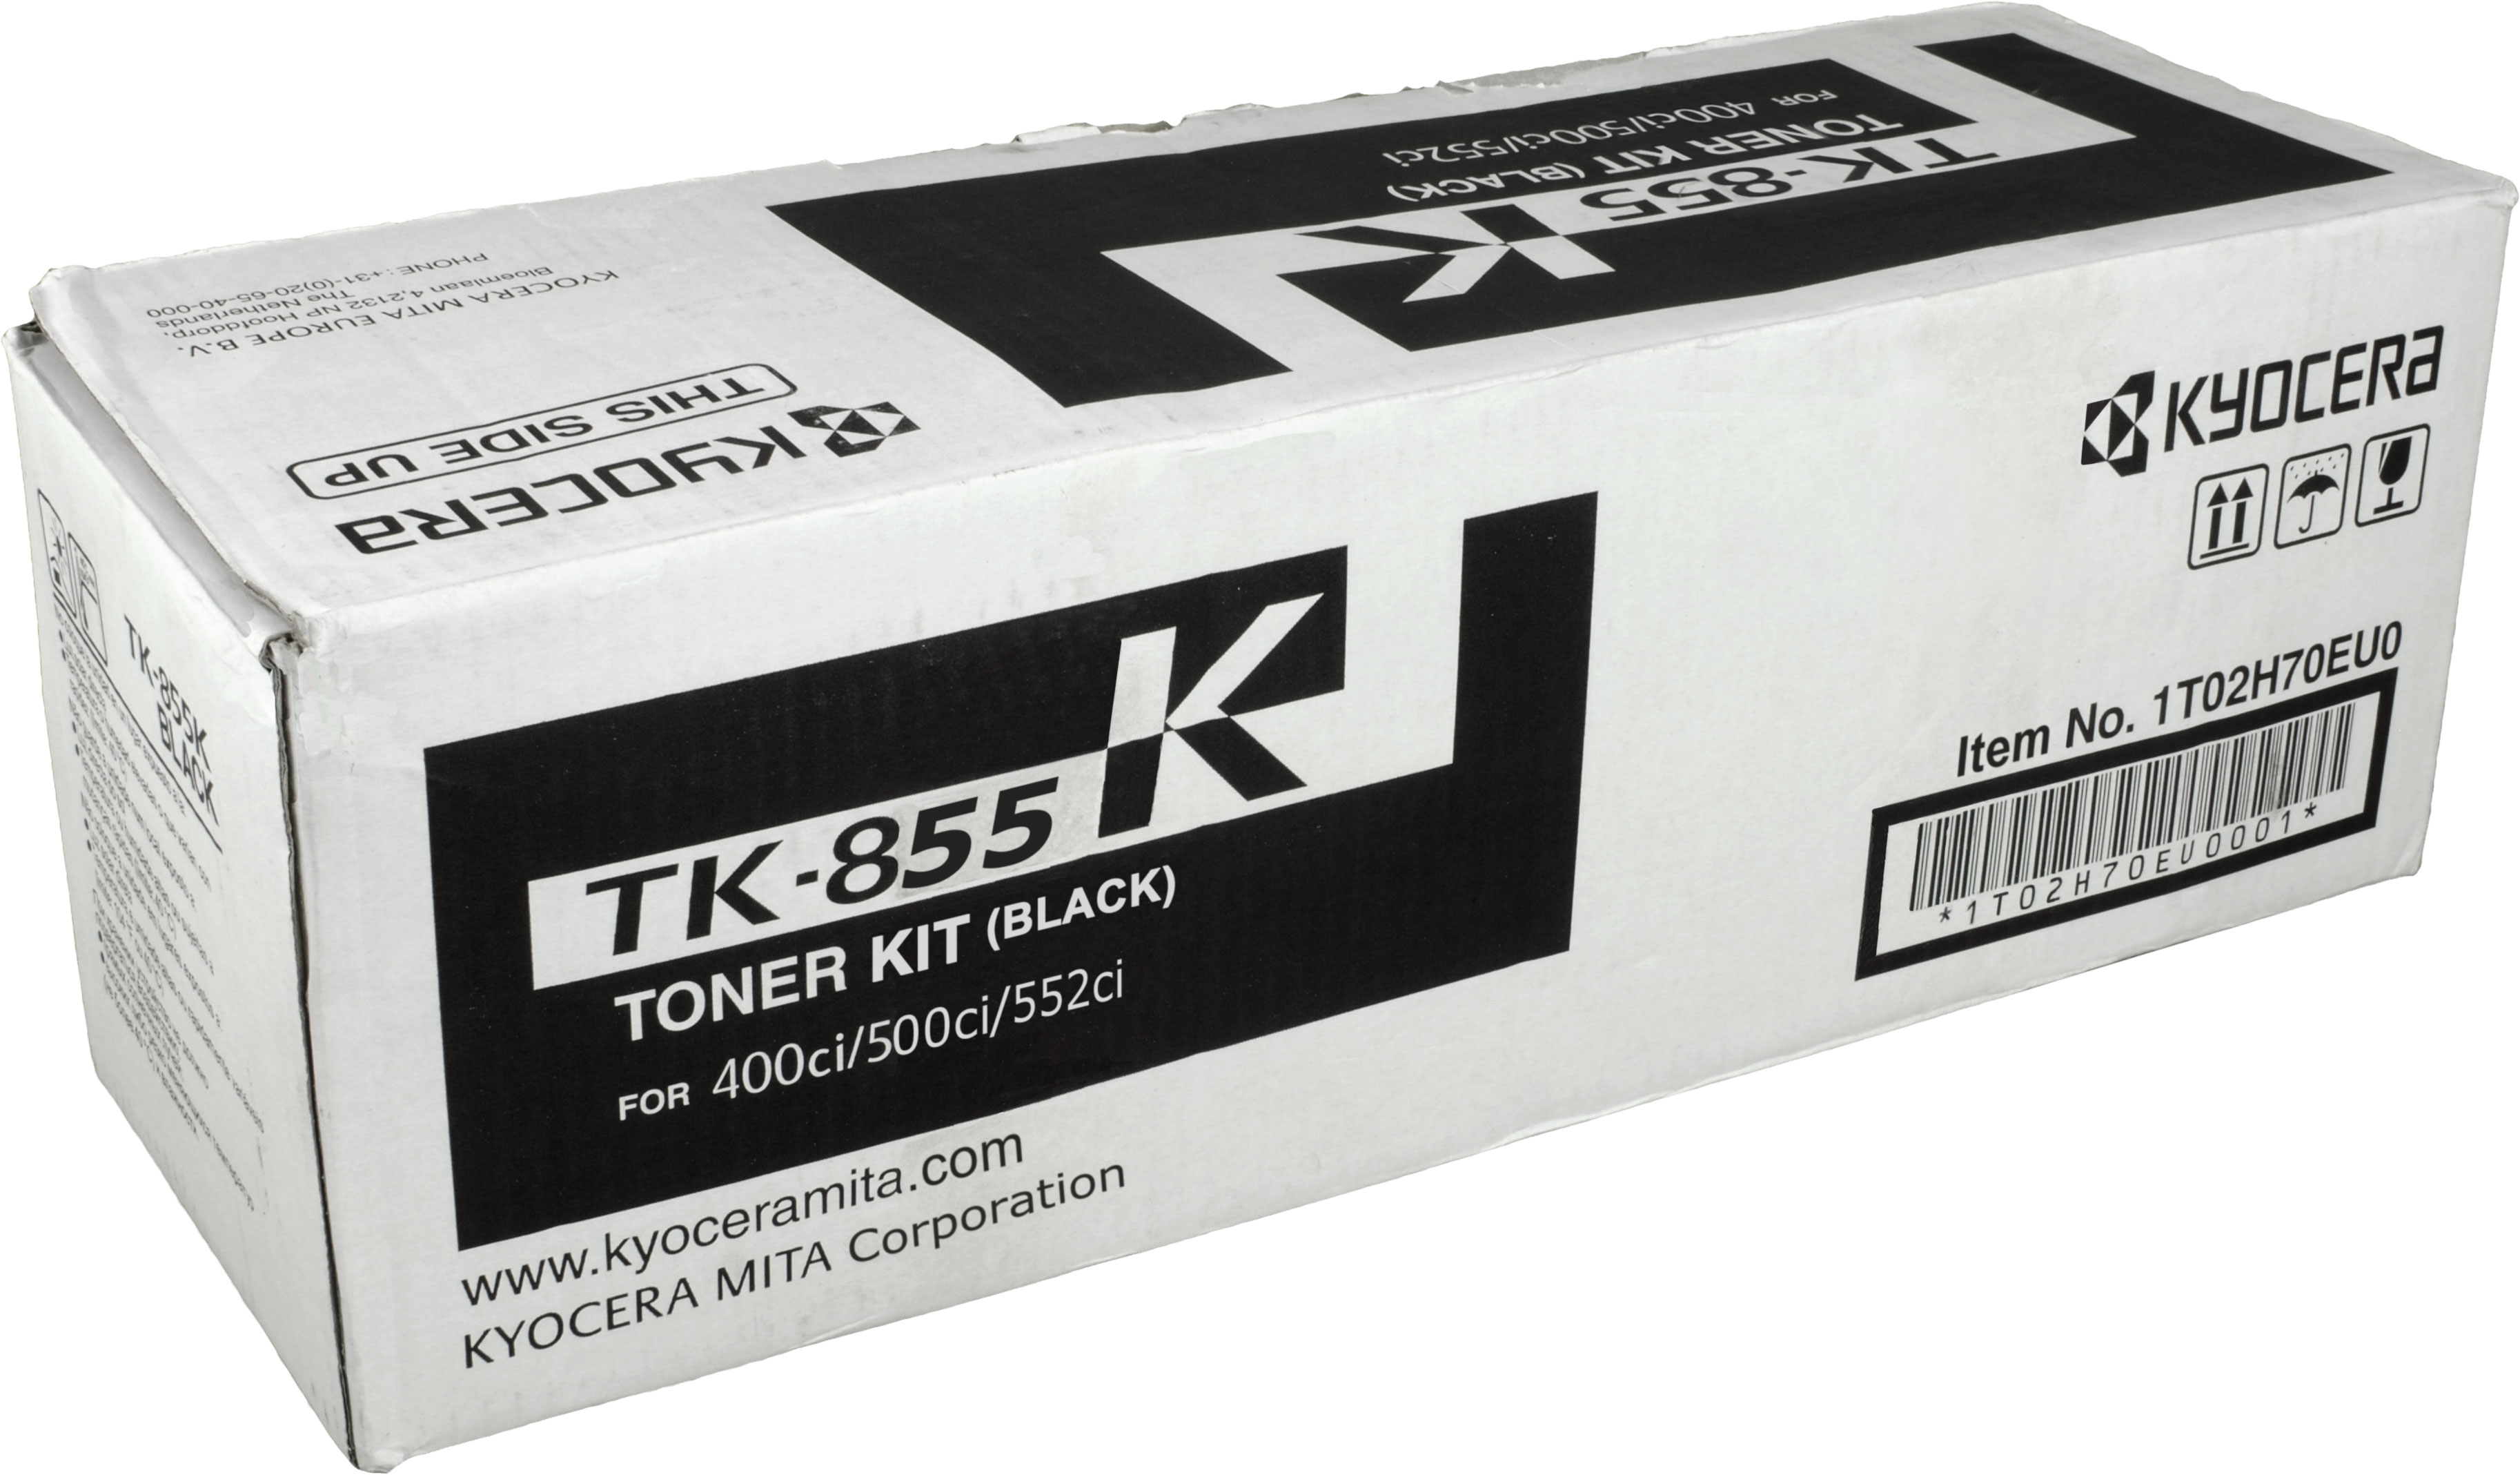 (TK-855K) TK-855K Toner KYOCERA schwarz